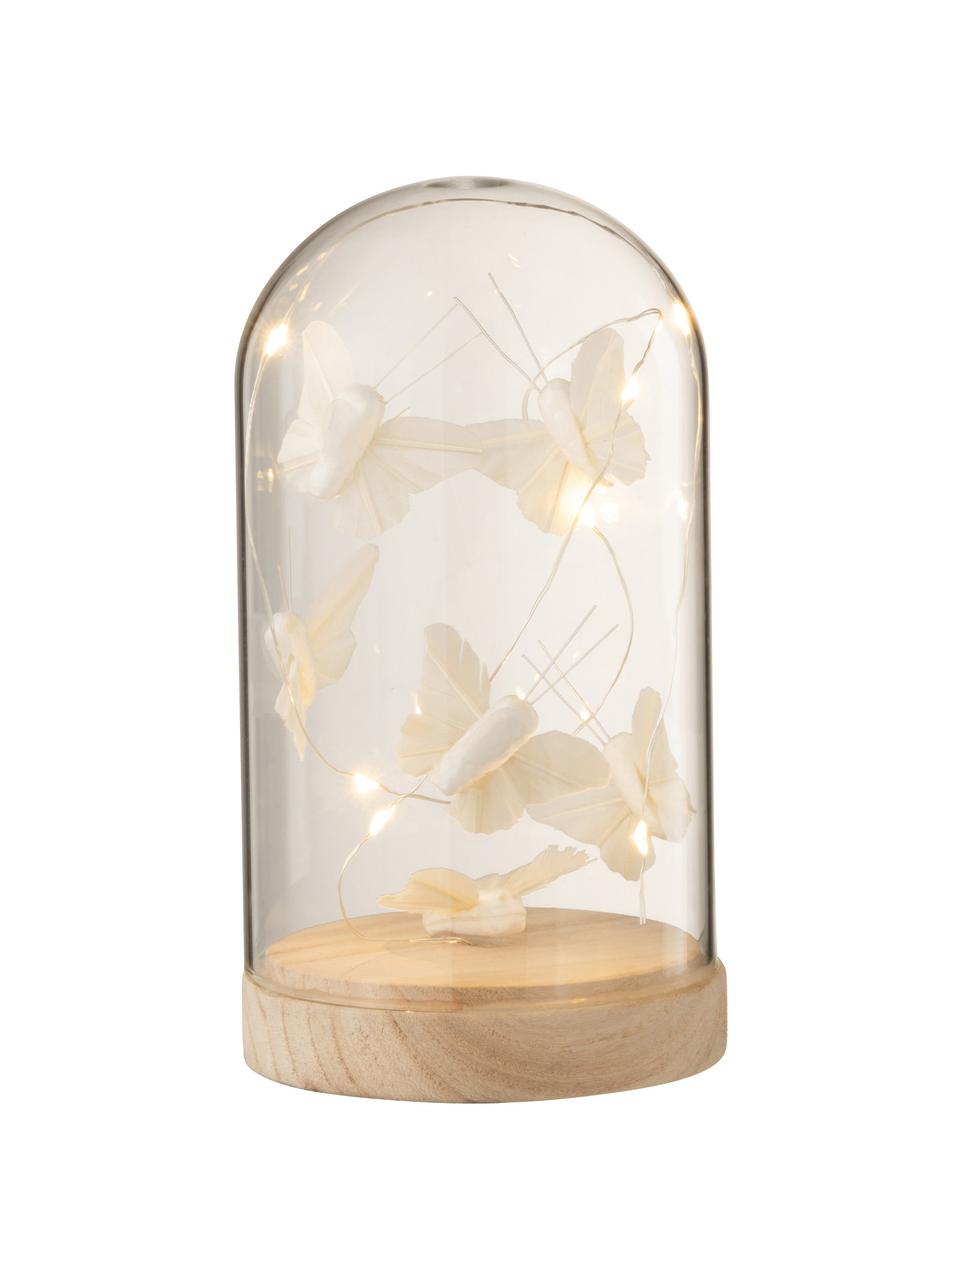 Dekoracja świetlna LED Bell, Szkło, drewno, Biały, odcienie złotego, Ø 9 x W 17 cm